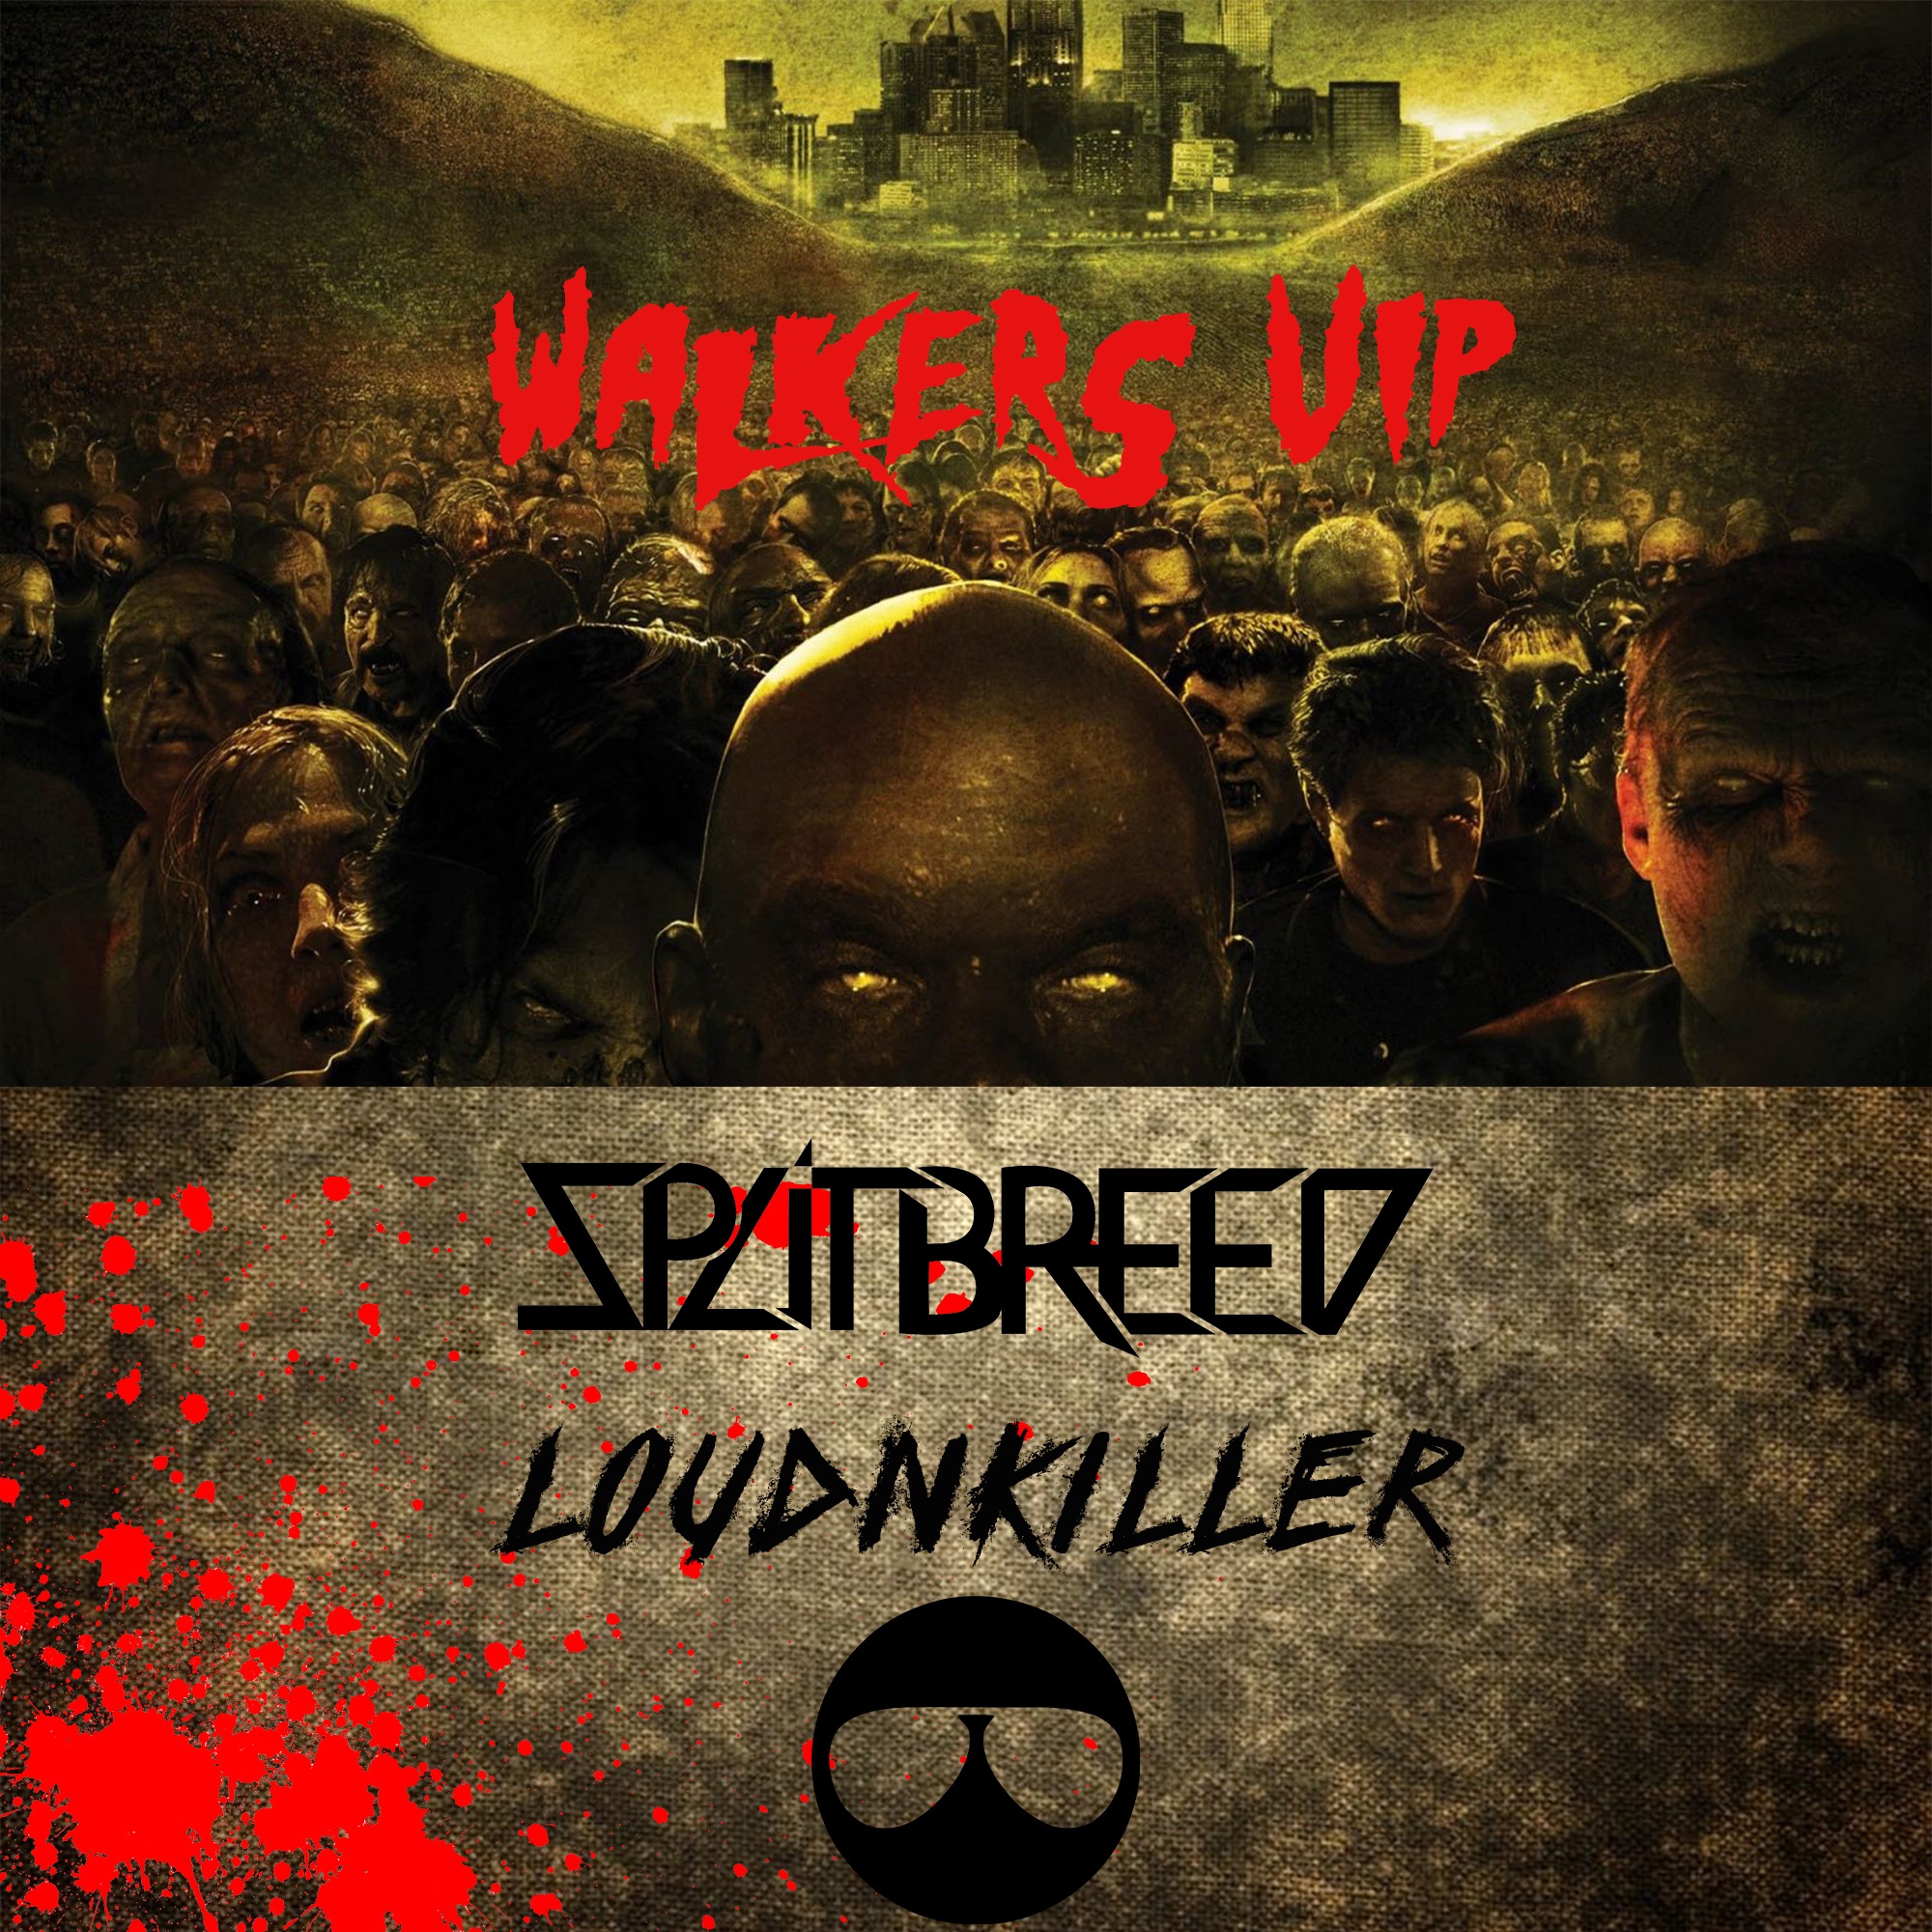 Skinuti SPLITBREED & LOUD N' KILLER - WALKERS (VIP)